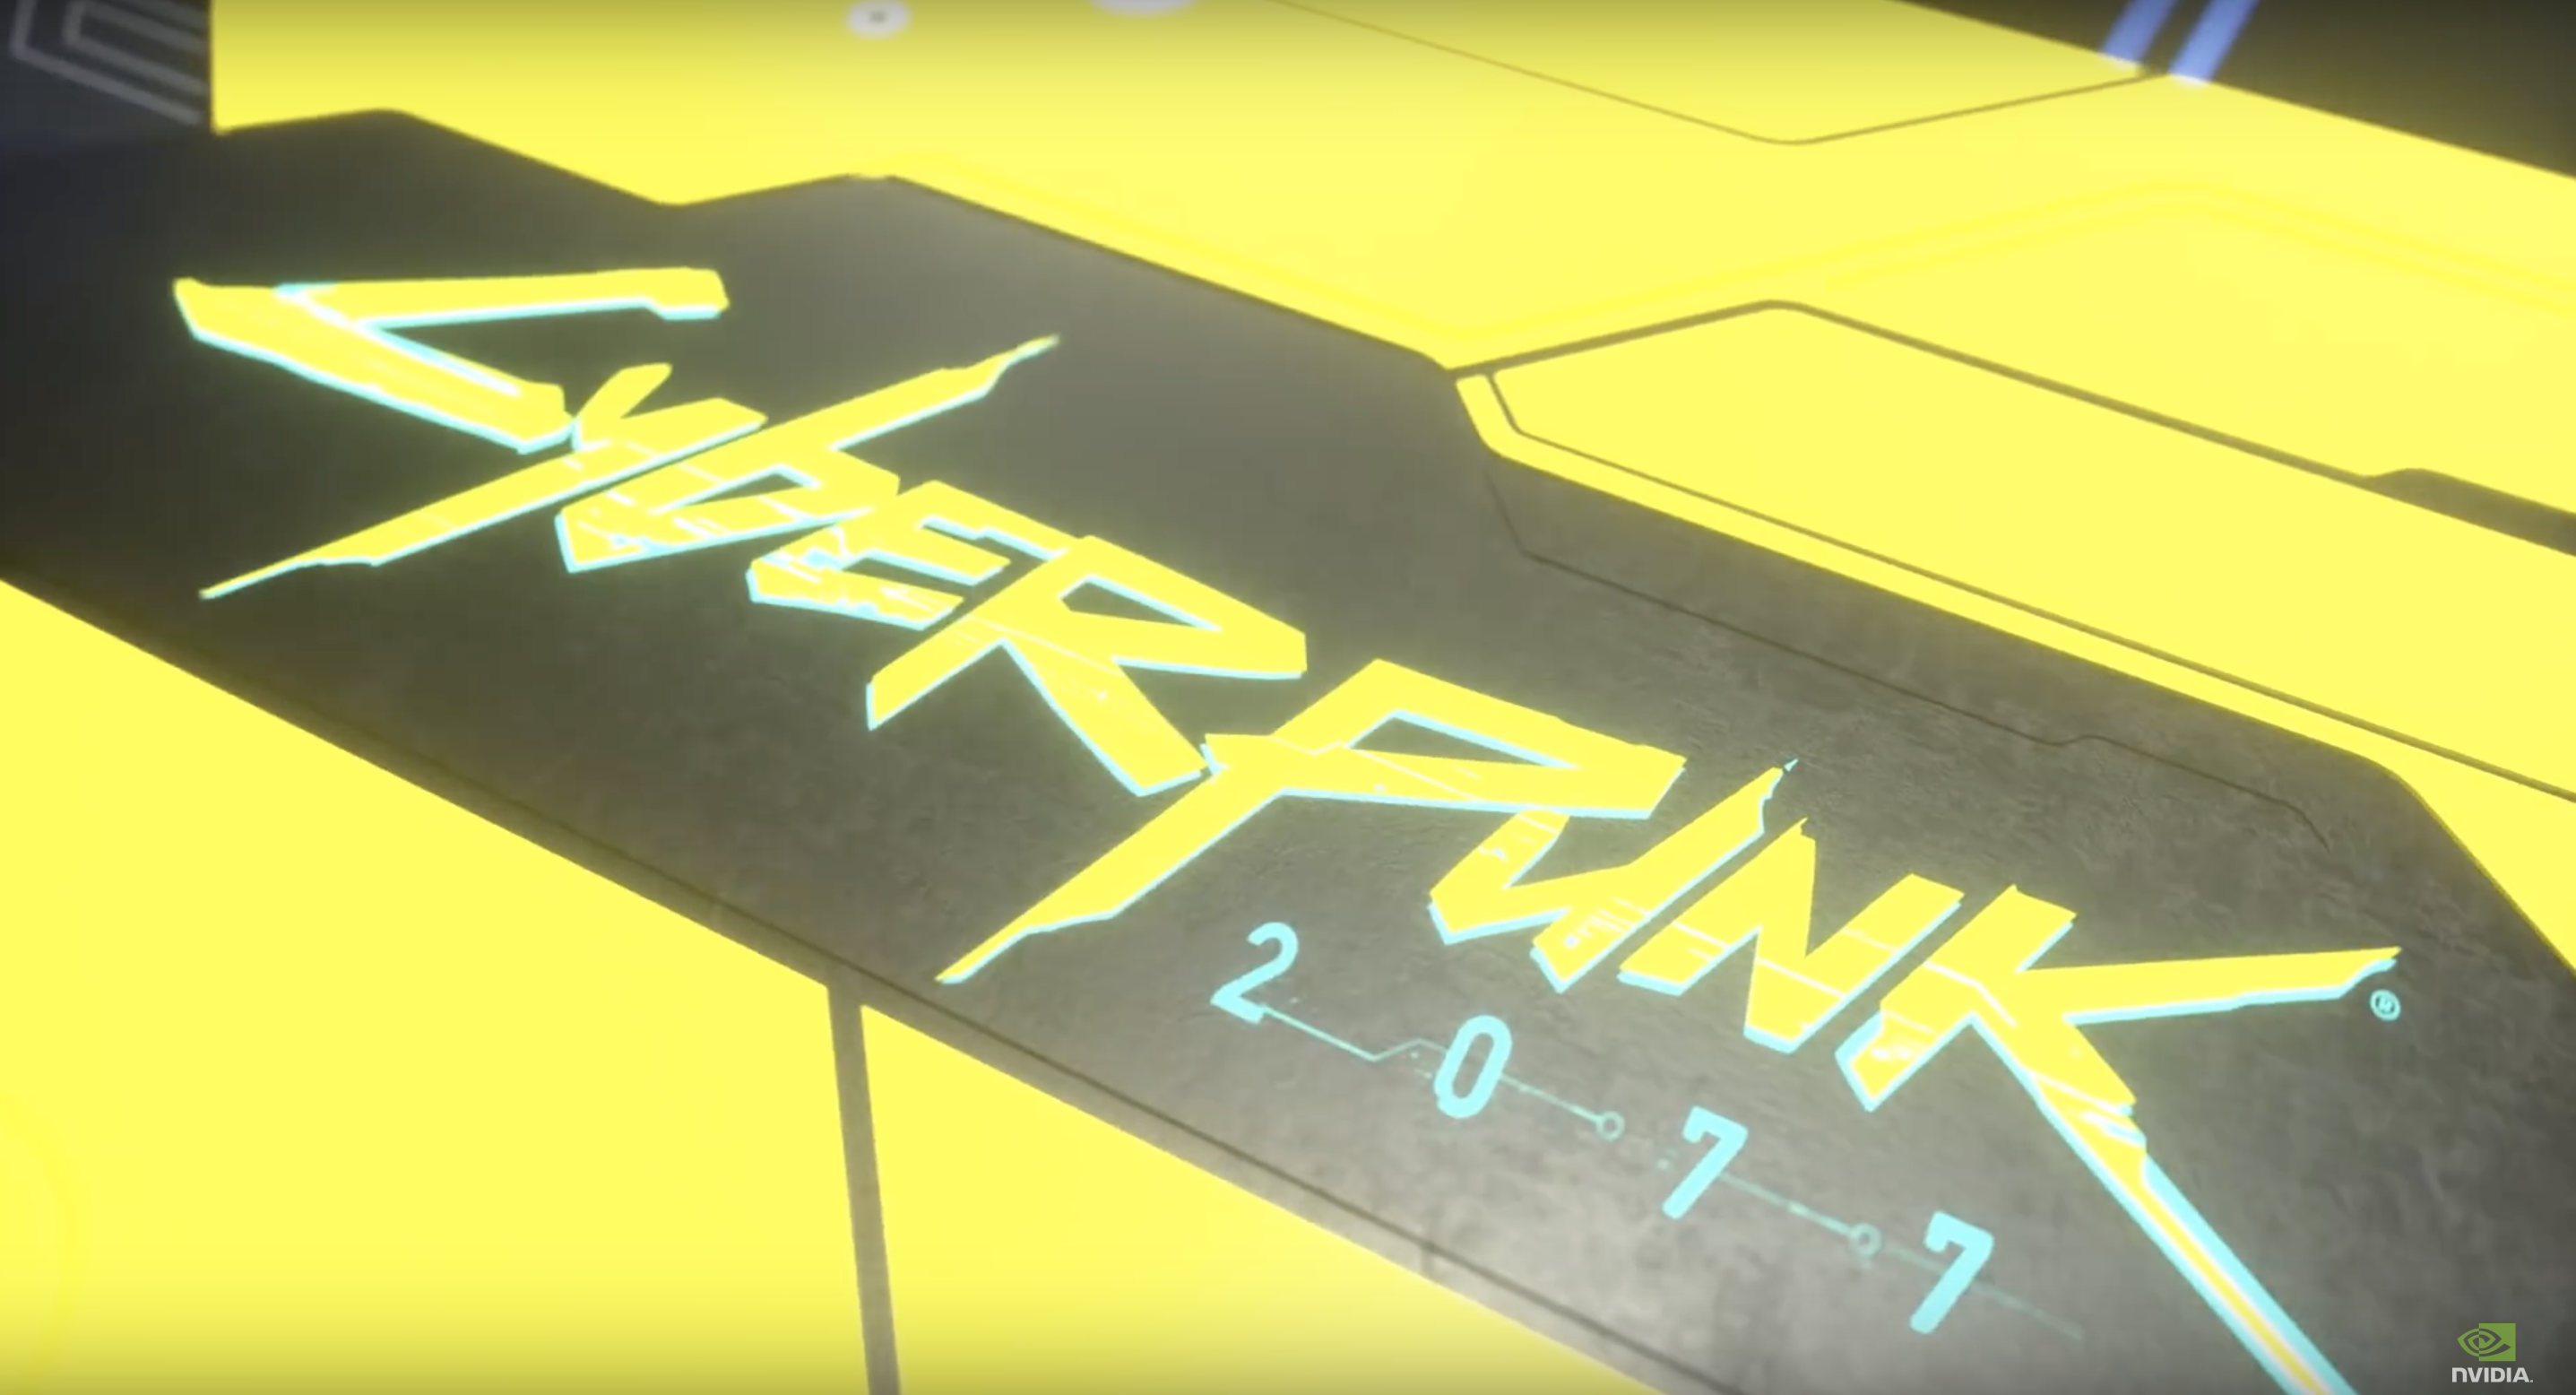 顯卡背面有著大大的「Cyberpunk 2077」字樣，整張卡背也遊戲主題的黃色打底，並且加入霓虹燈視覺的電子藍點綴